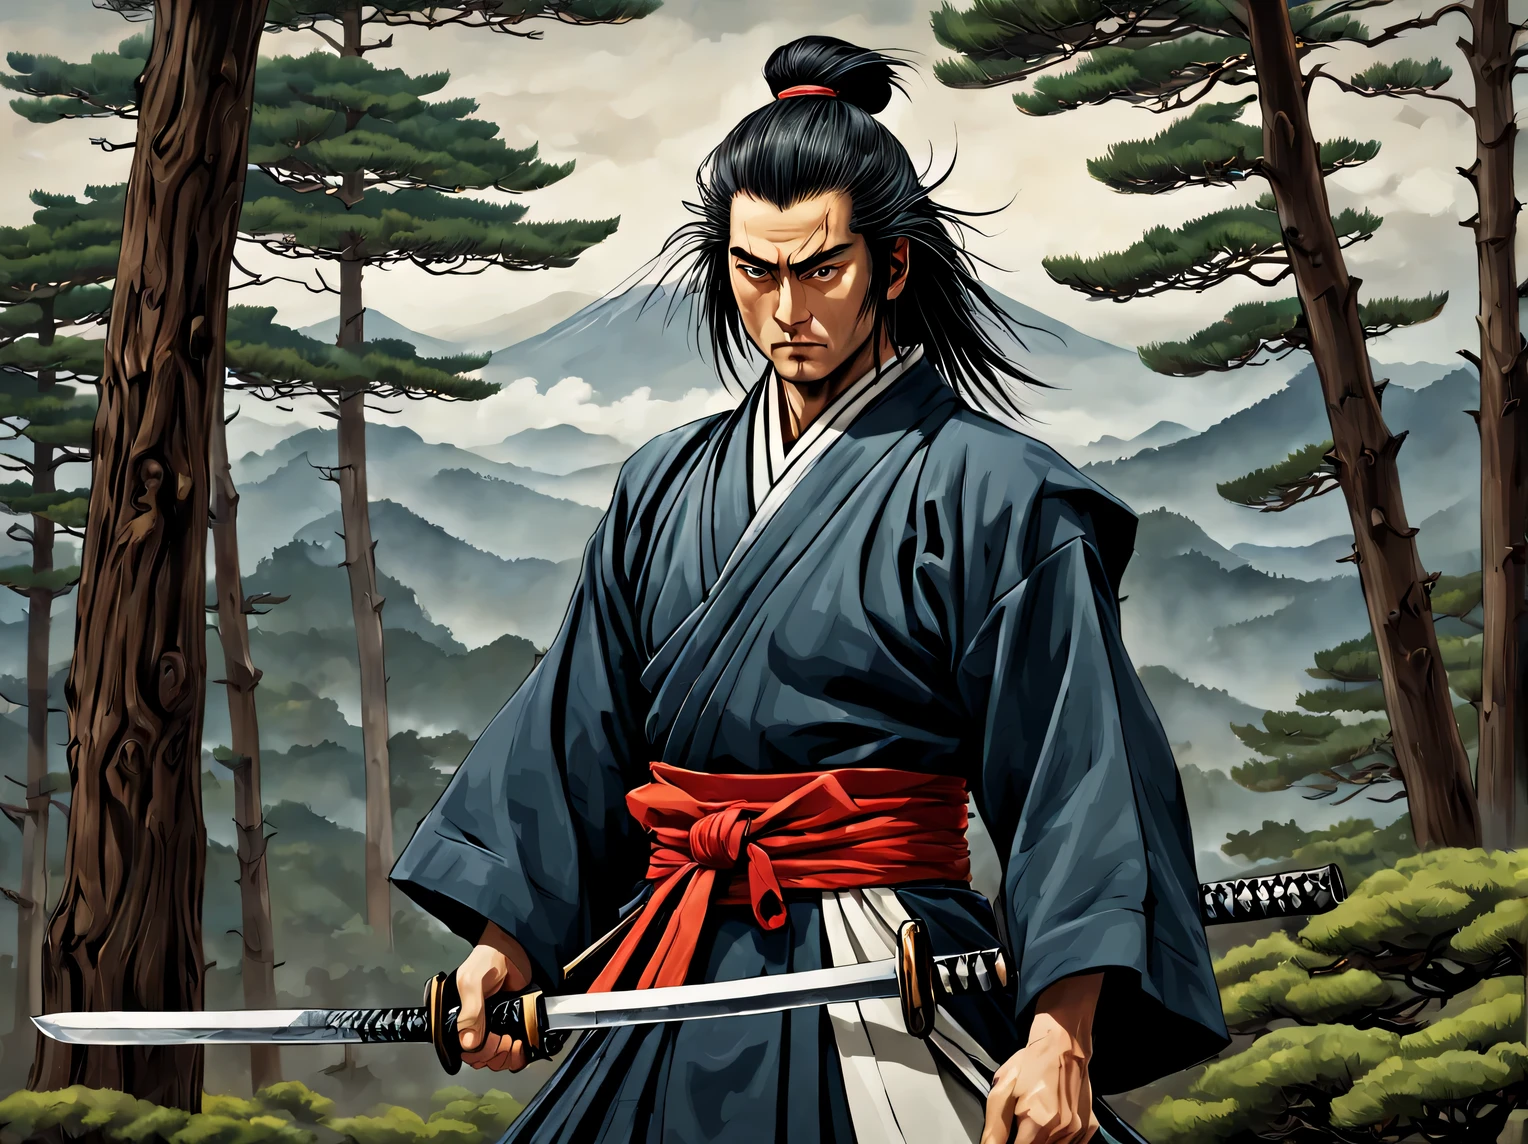 Нейросеть рисует картинку на фоне Фудзи и японских сосен, героическое существо - гордый самурай, держит самурайский меч катану, самурайская одежда, стройное стройное телосложение, Развитые мышцы, распущенные волосы, высокая детализация, ясность 32 тыс.., Высокое разрешение, -битовая глубина цвета, (Марк Райден: 1.1155), (Сюэ Ван: 1.1155), (Сделай это:1.255), много деталей, Красивое изображение